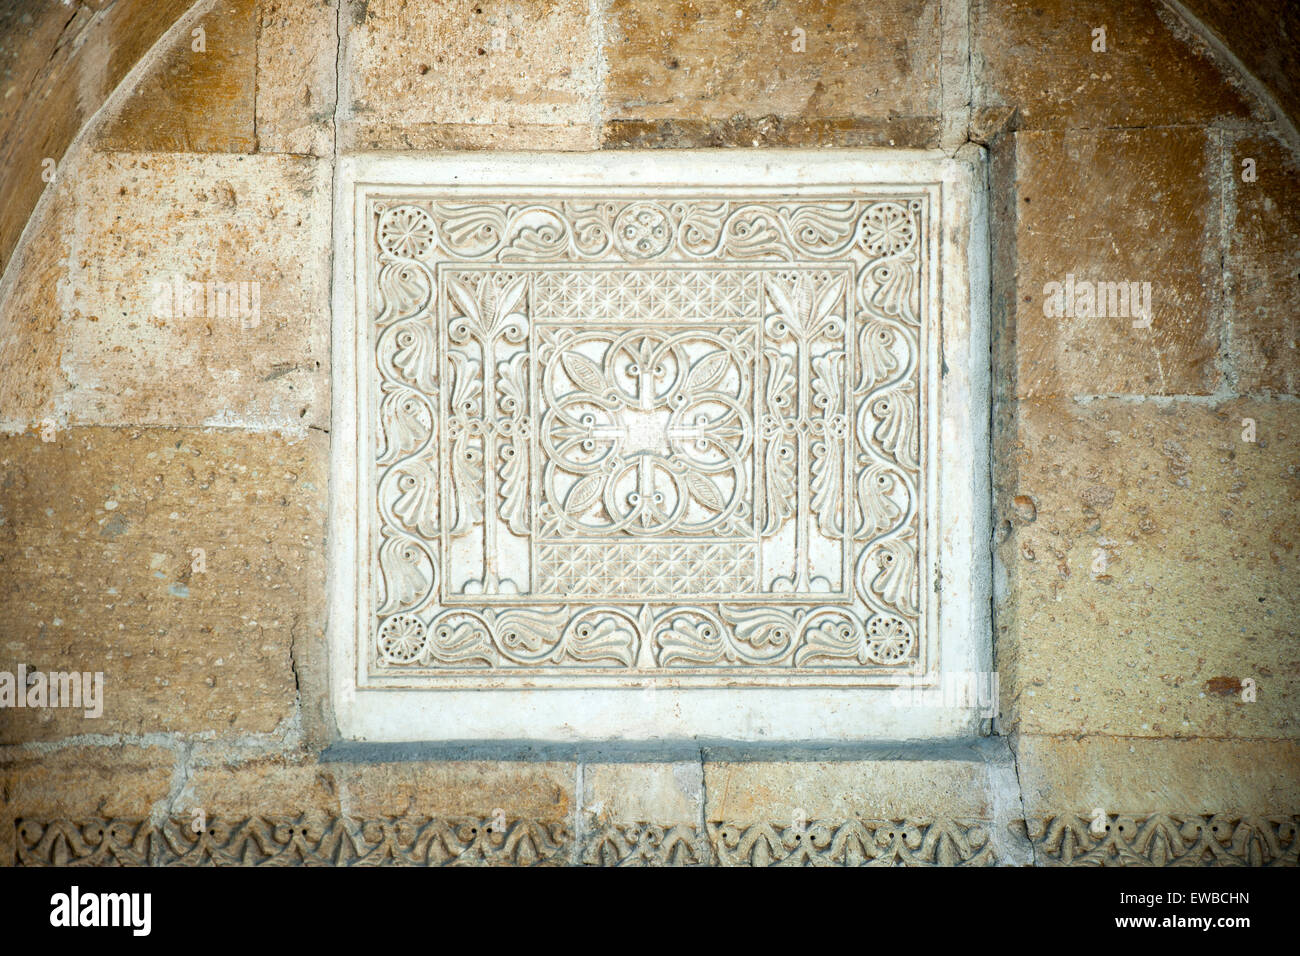 Türkei, Anatolien, Konya, Relieftafel über dem Eingang der zehneckigen Türbe des Sultan Kilic Arslan II. im Hof der Alaaddin-Mos Foto Stock